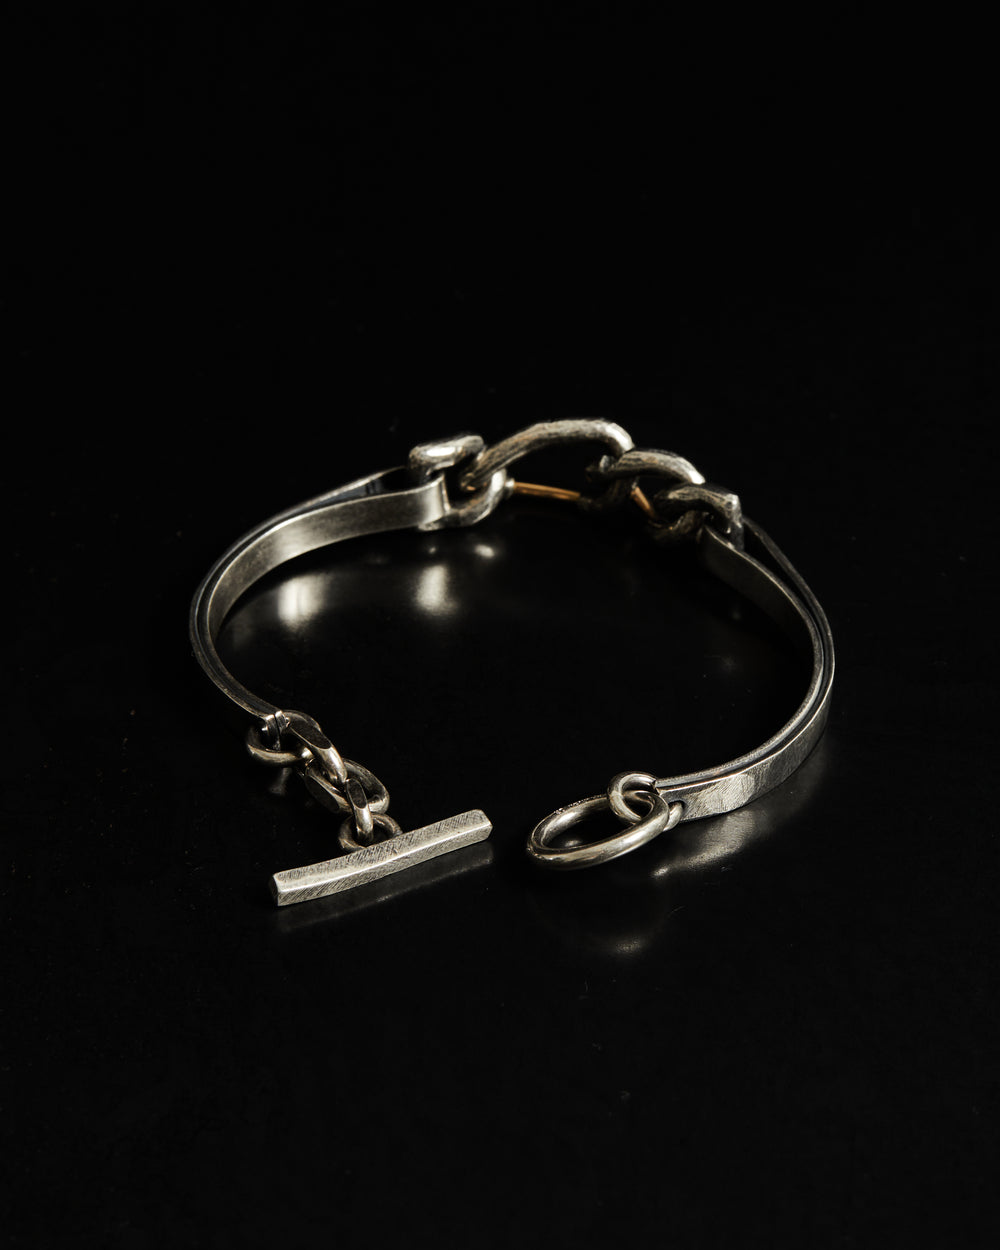 Chain Links Bracelet